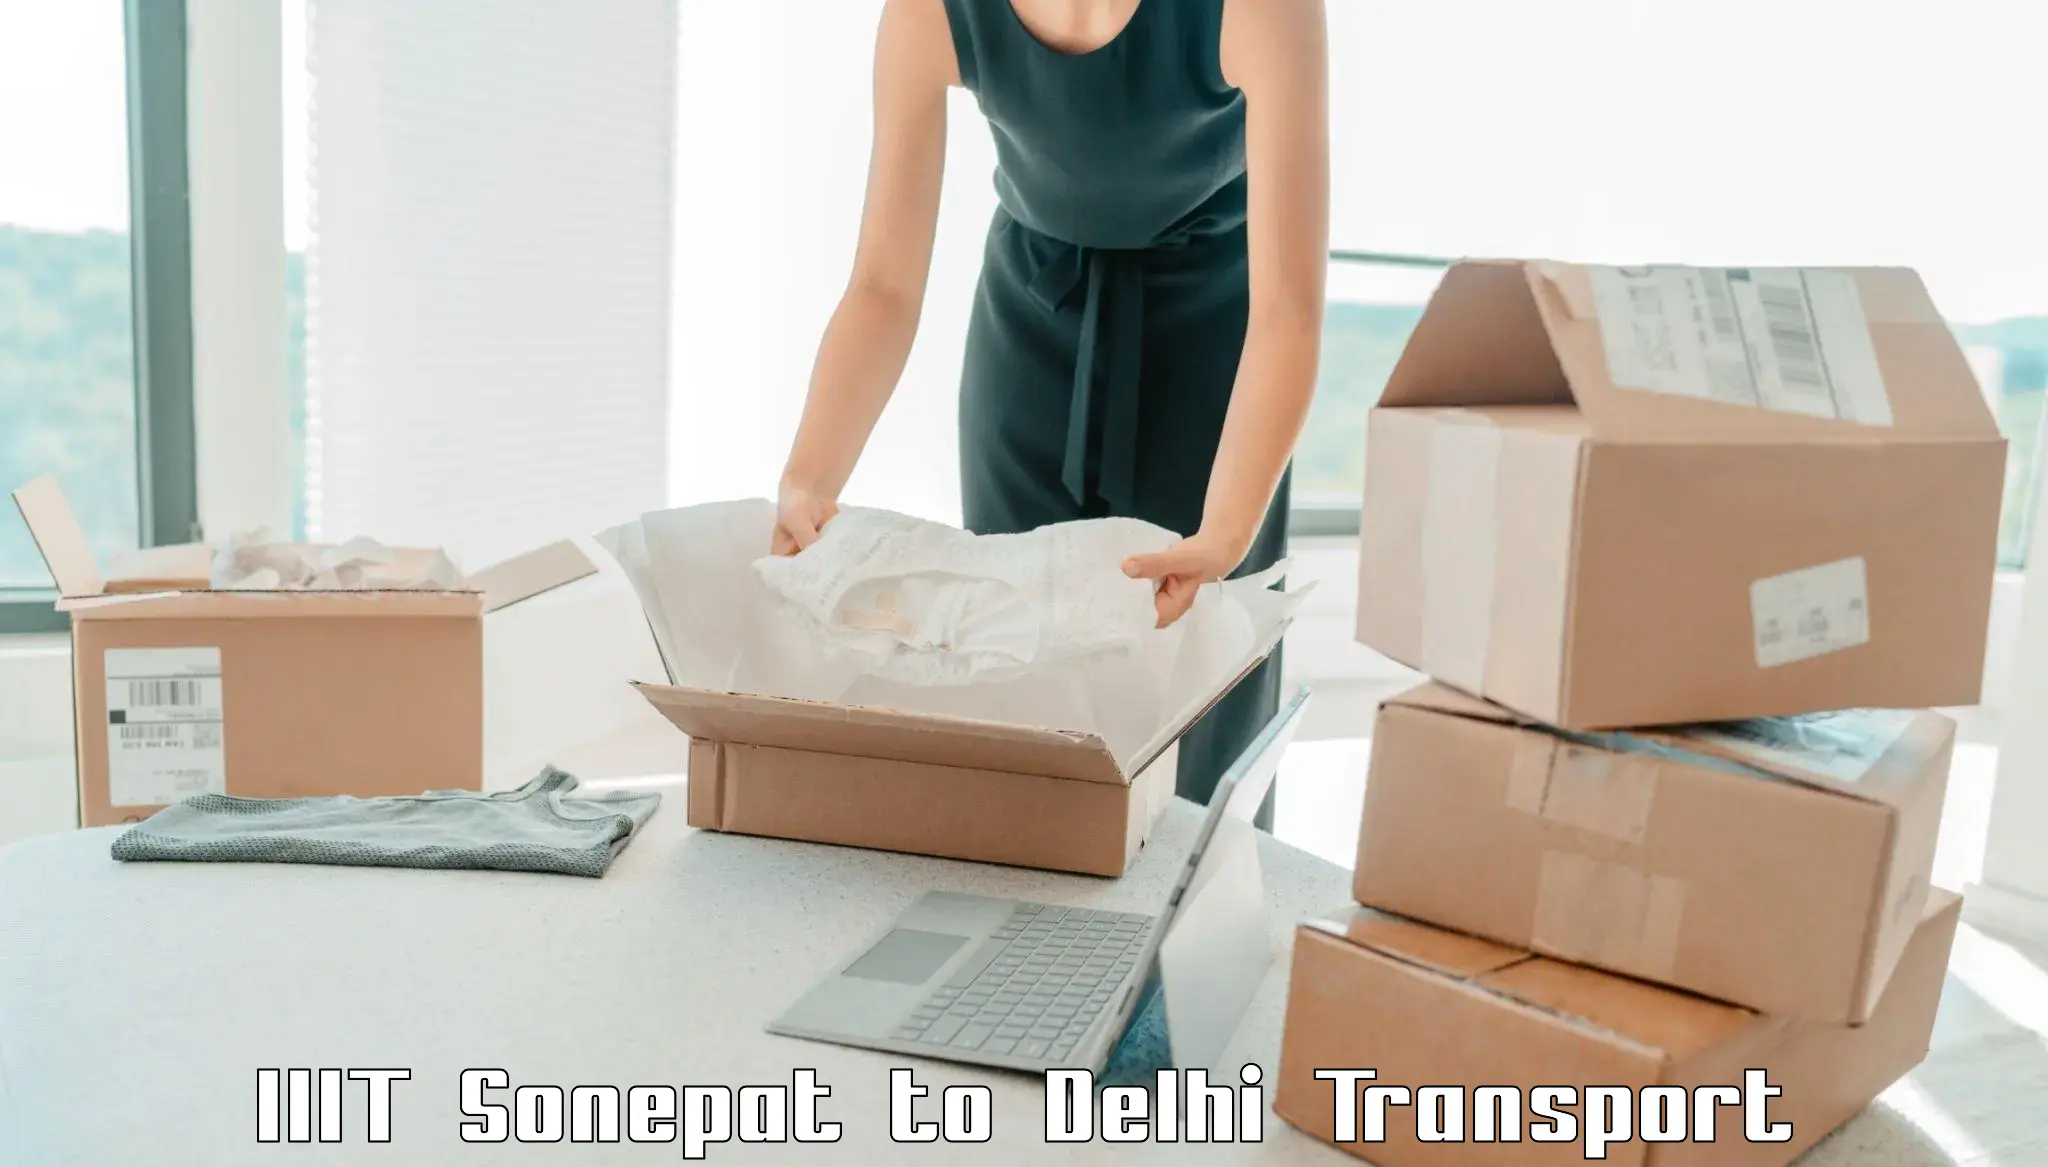 Bike transport service IIIT Sonepat to East Delhi